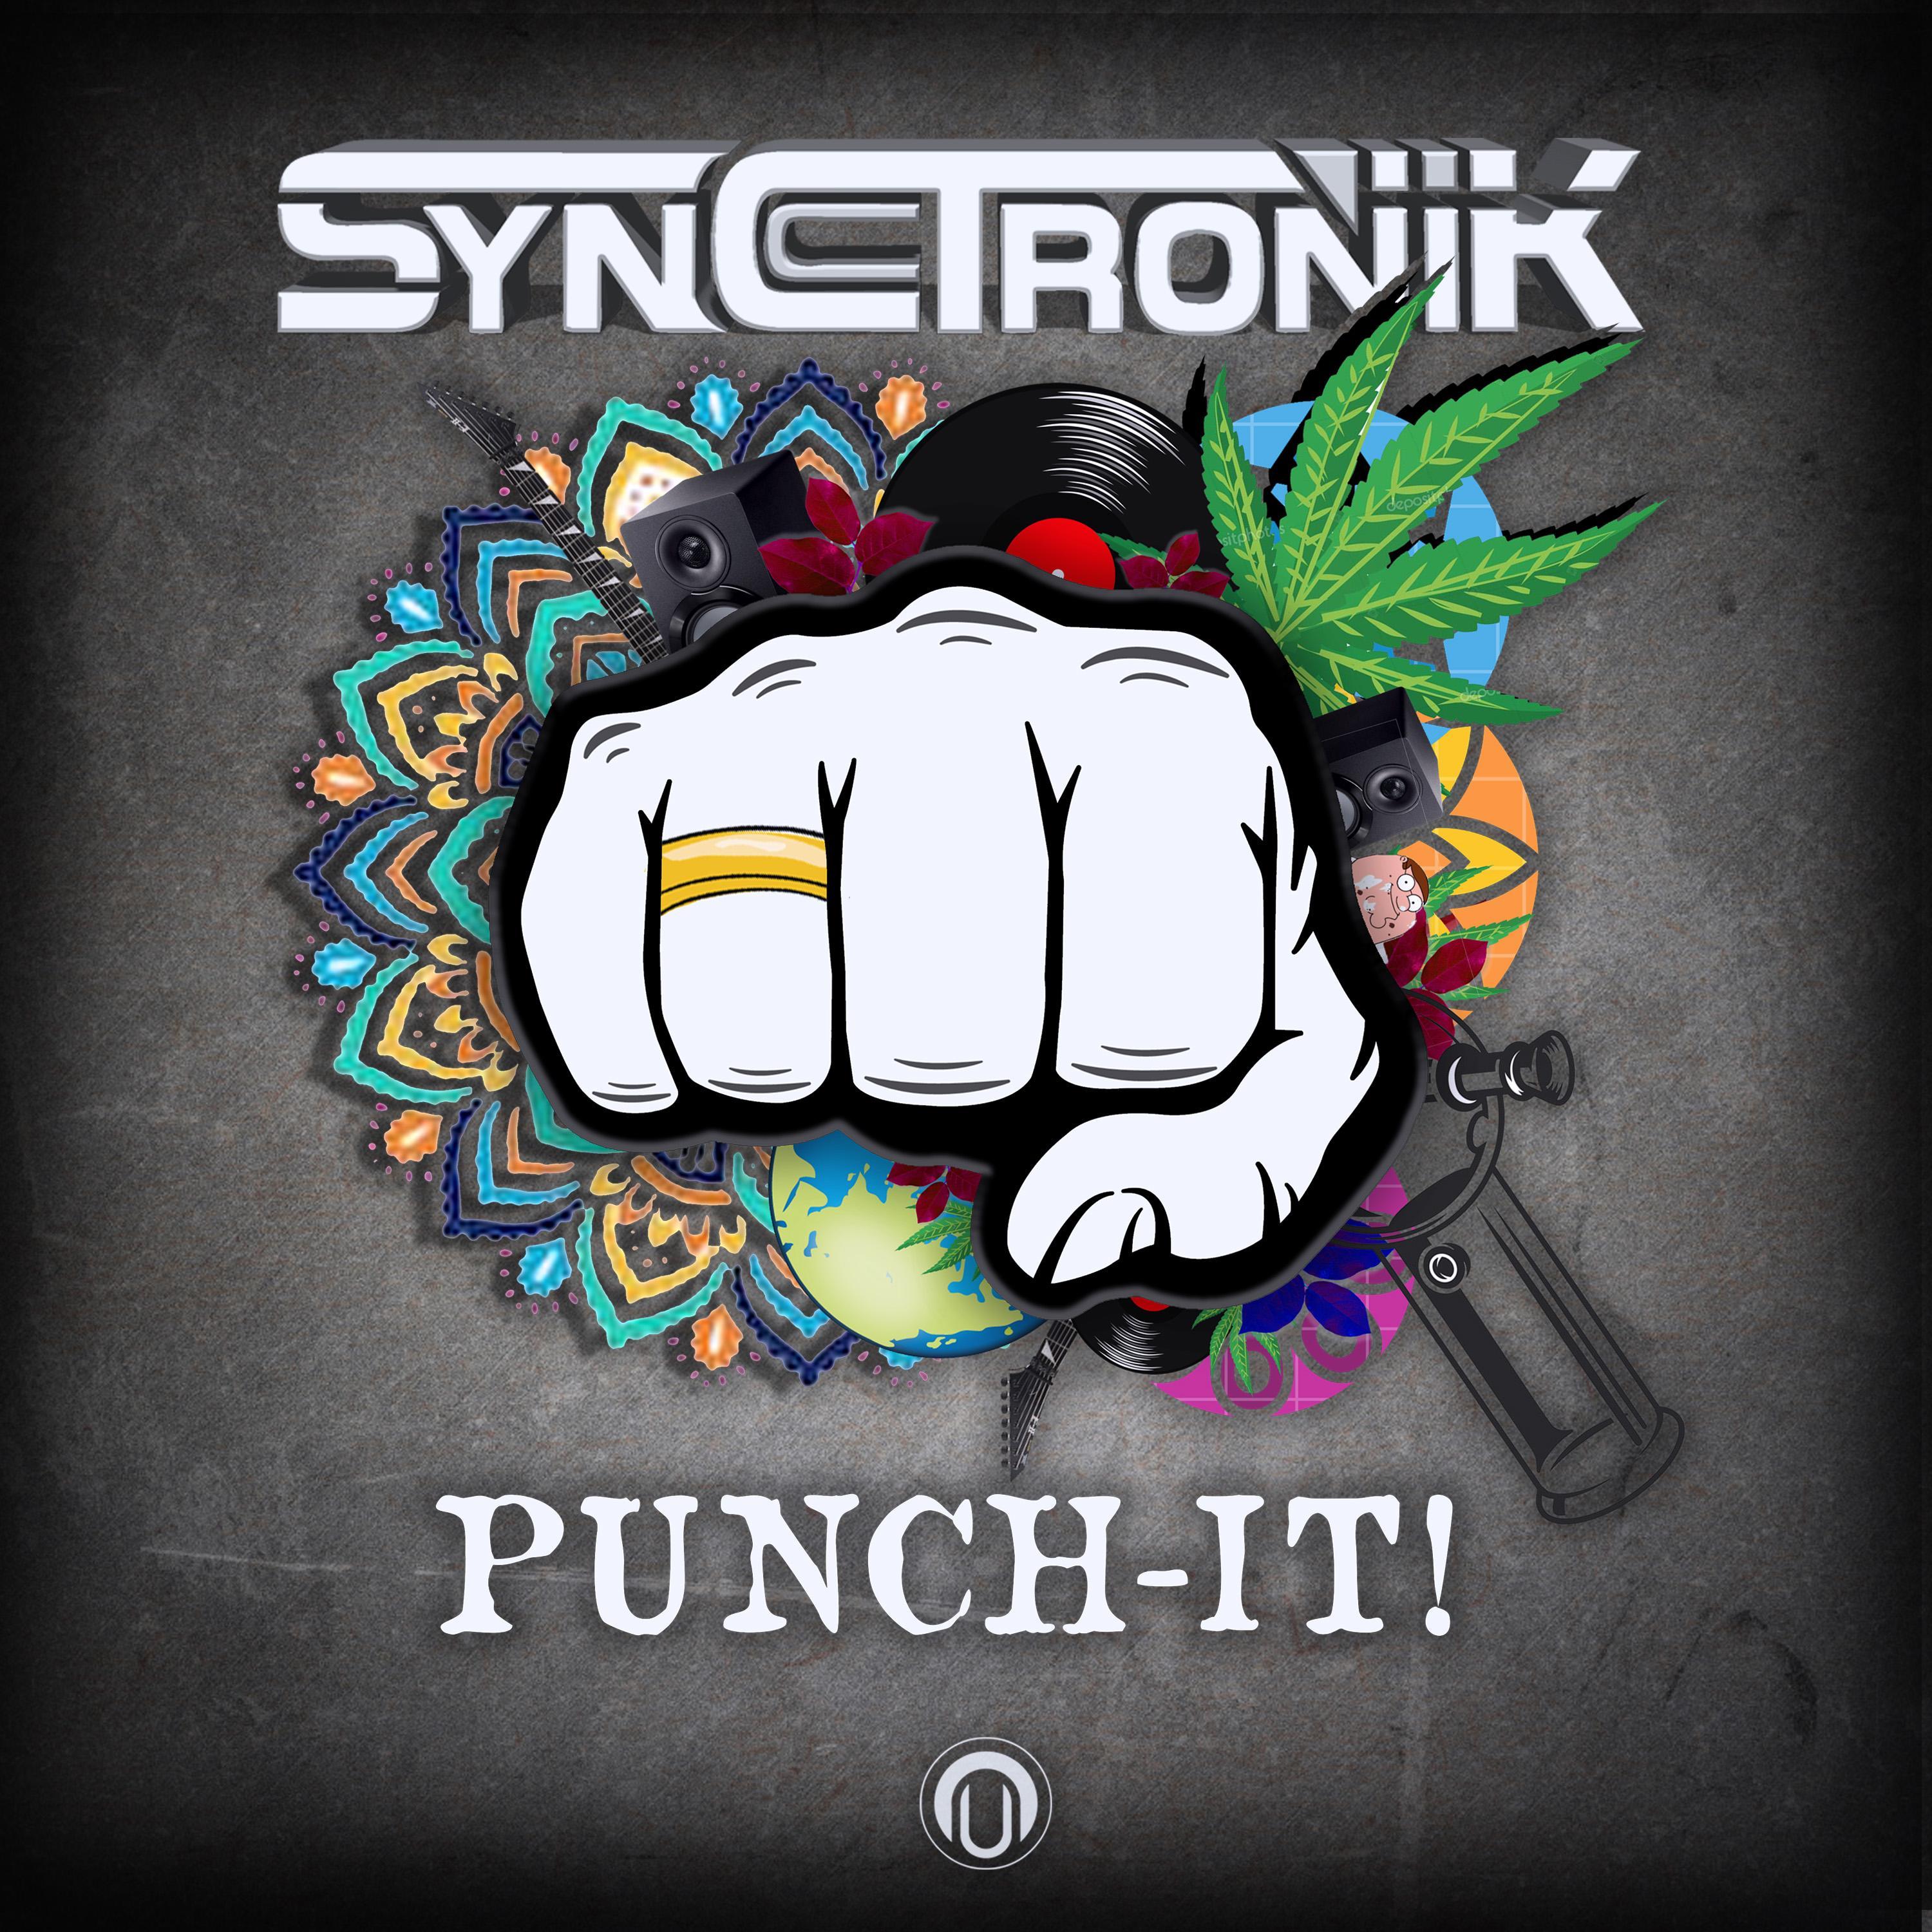 Punch-It